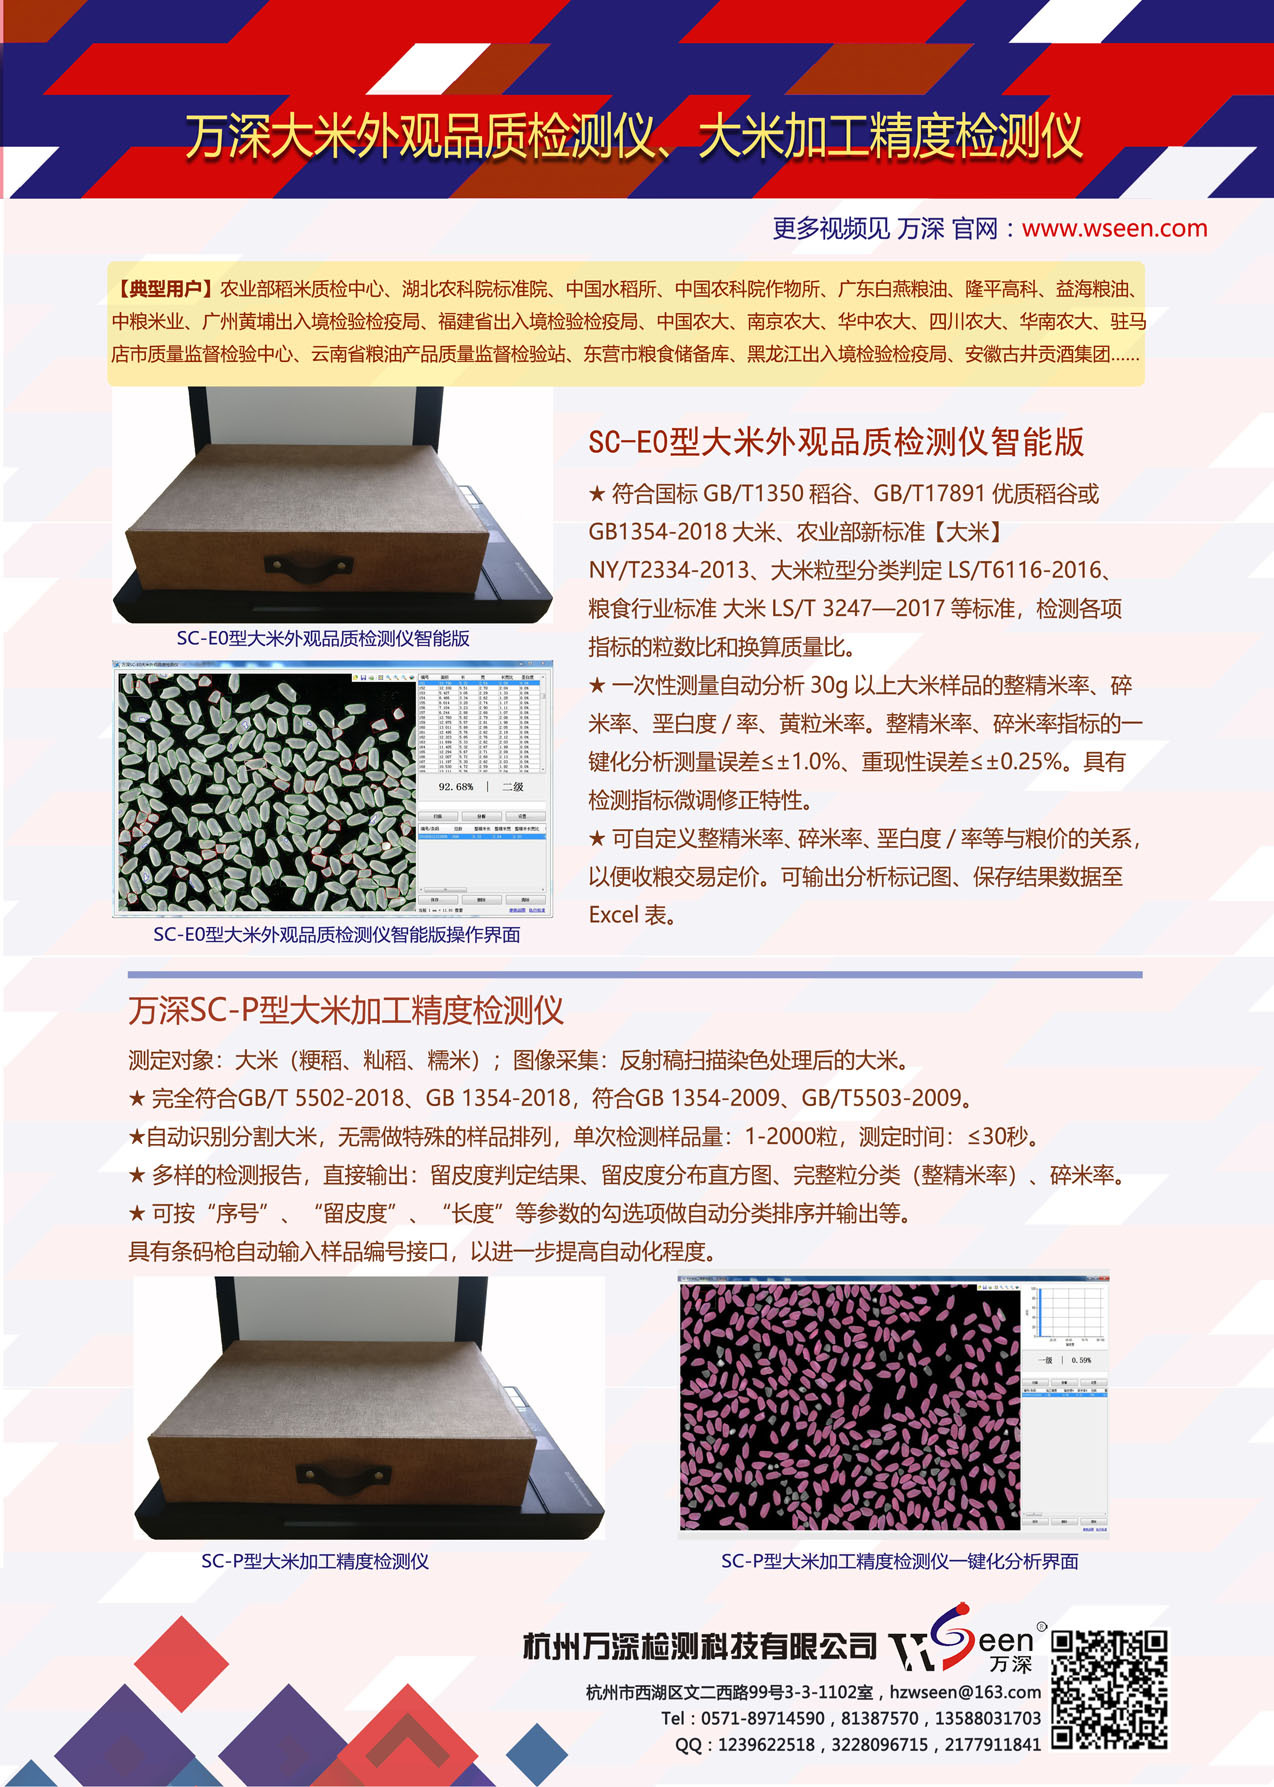 万深SC-E0型大米外观品质检测仪智能简易版